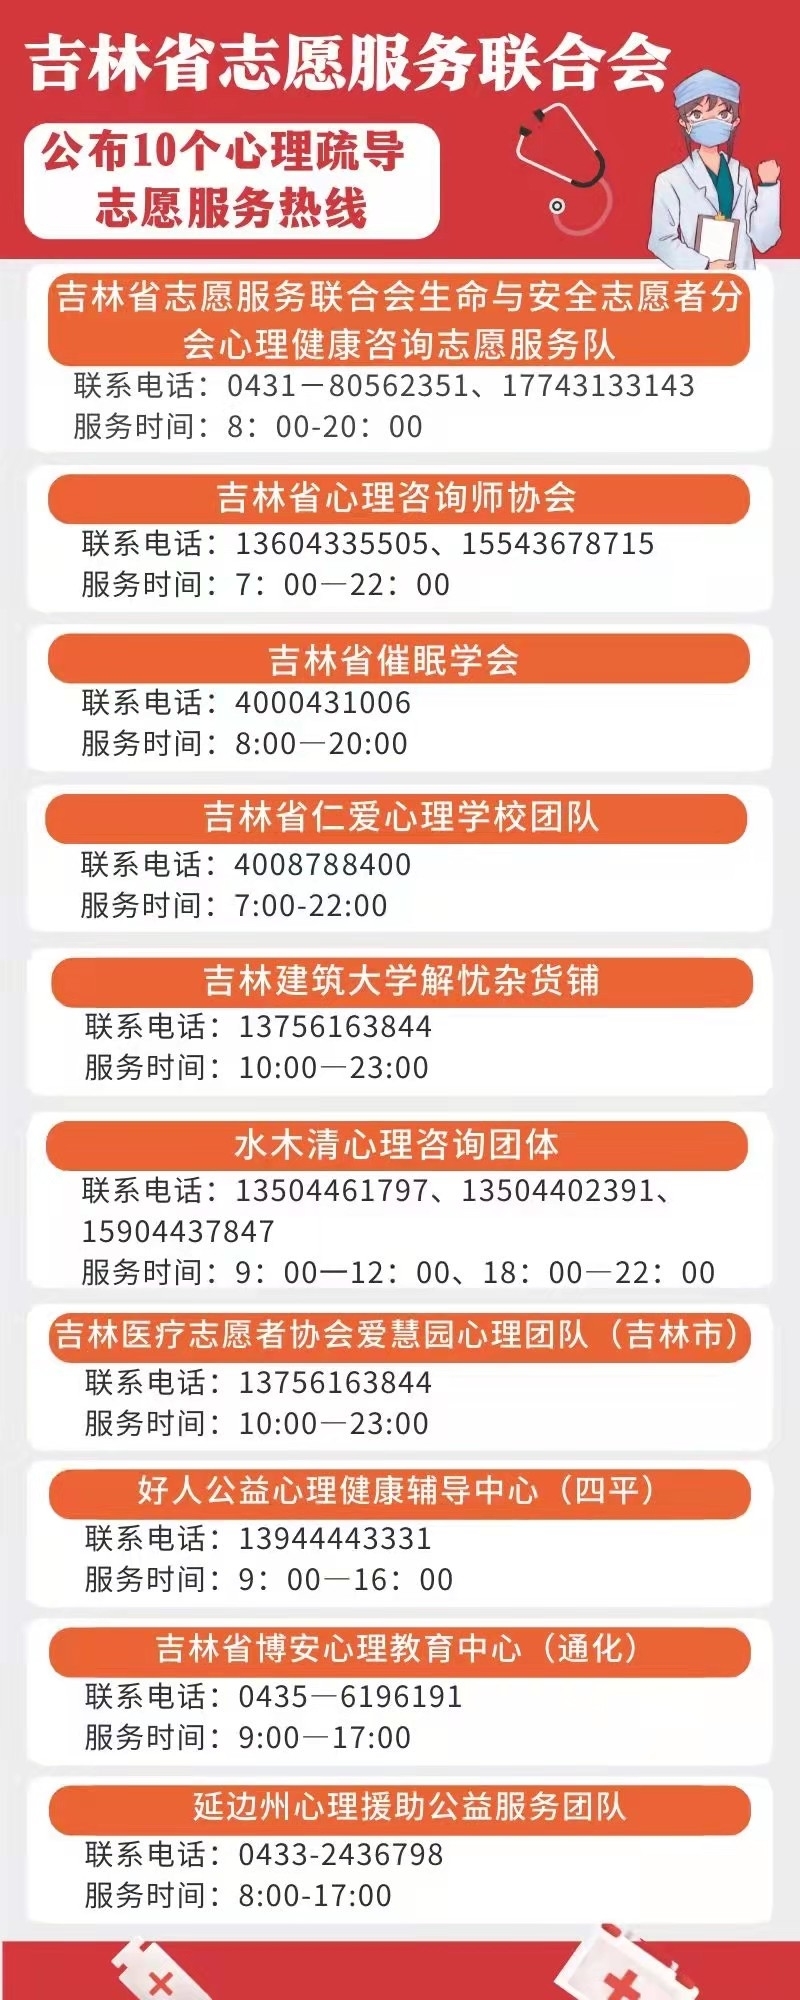 吉林省10个心理疏导志愿服务热线公布